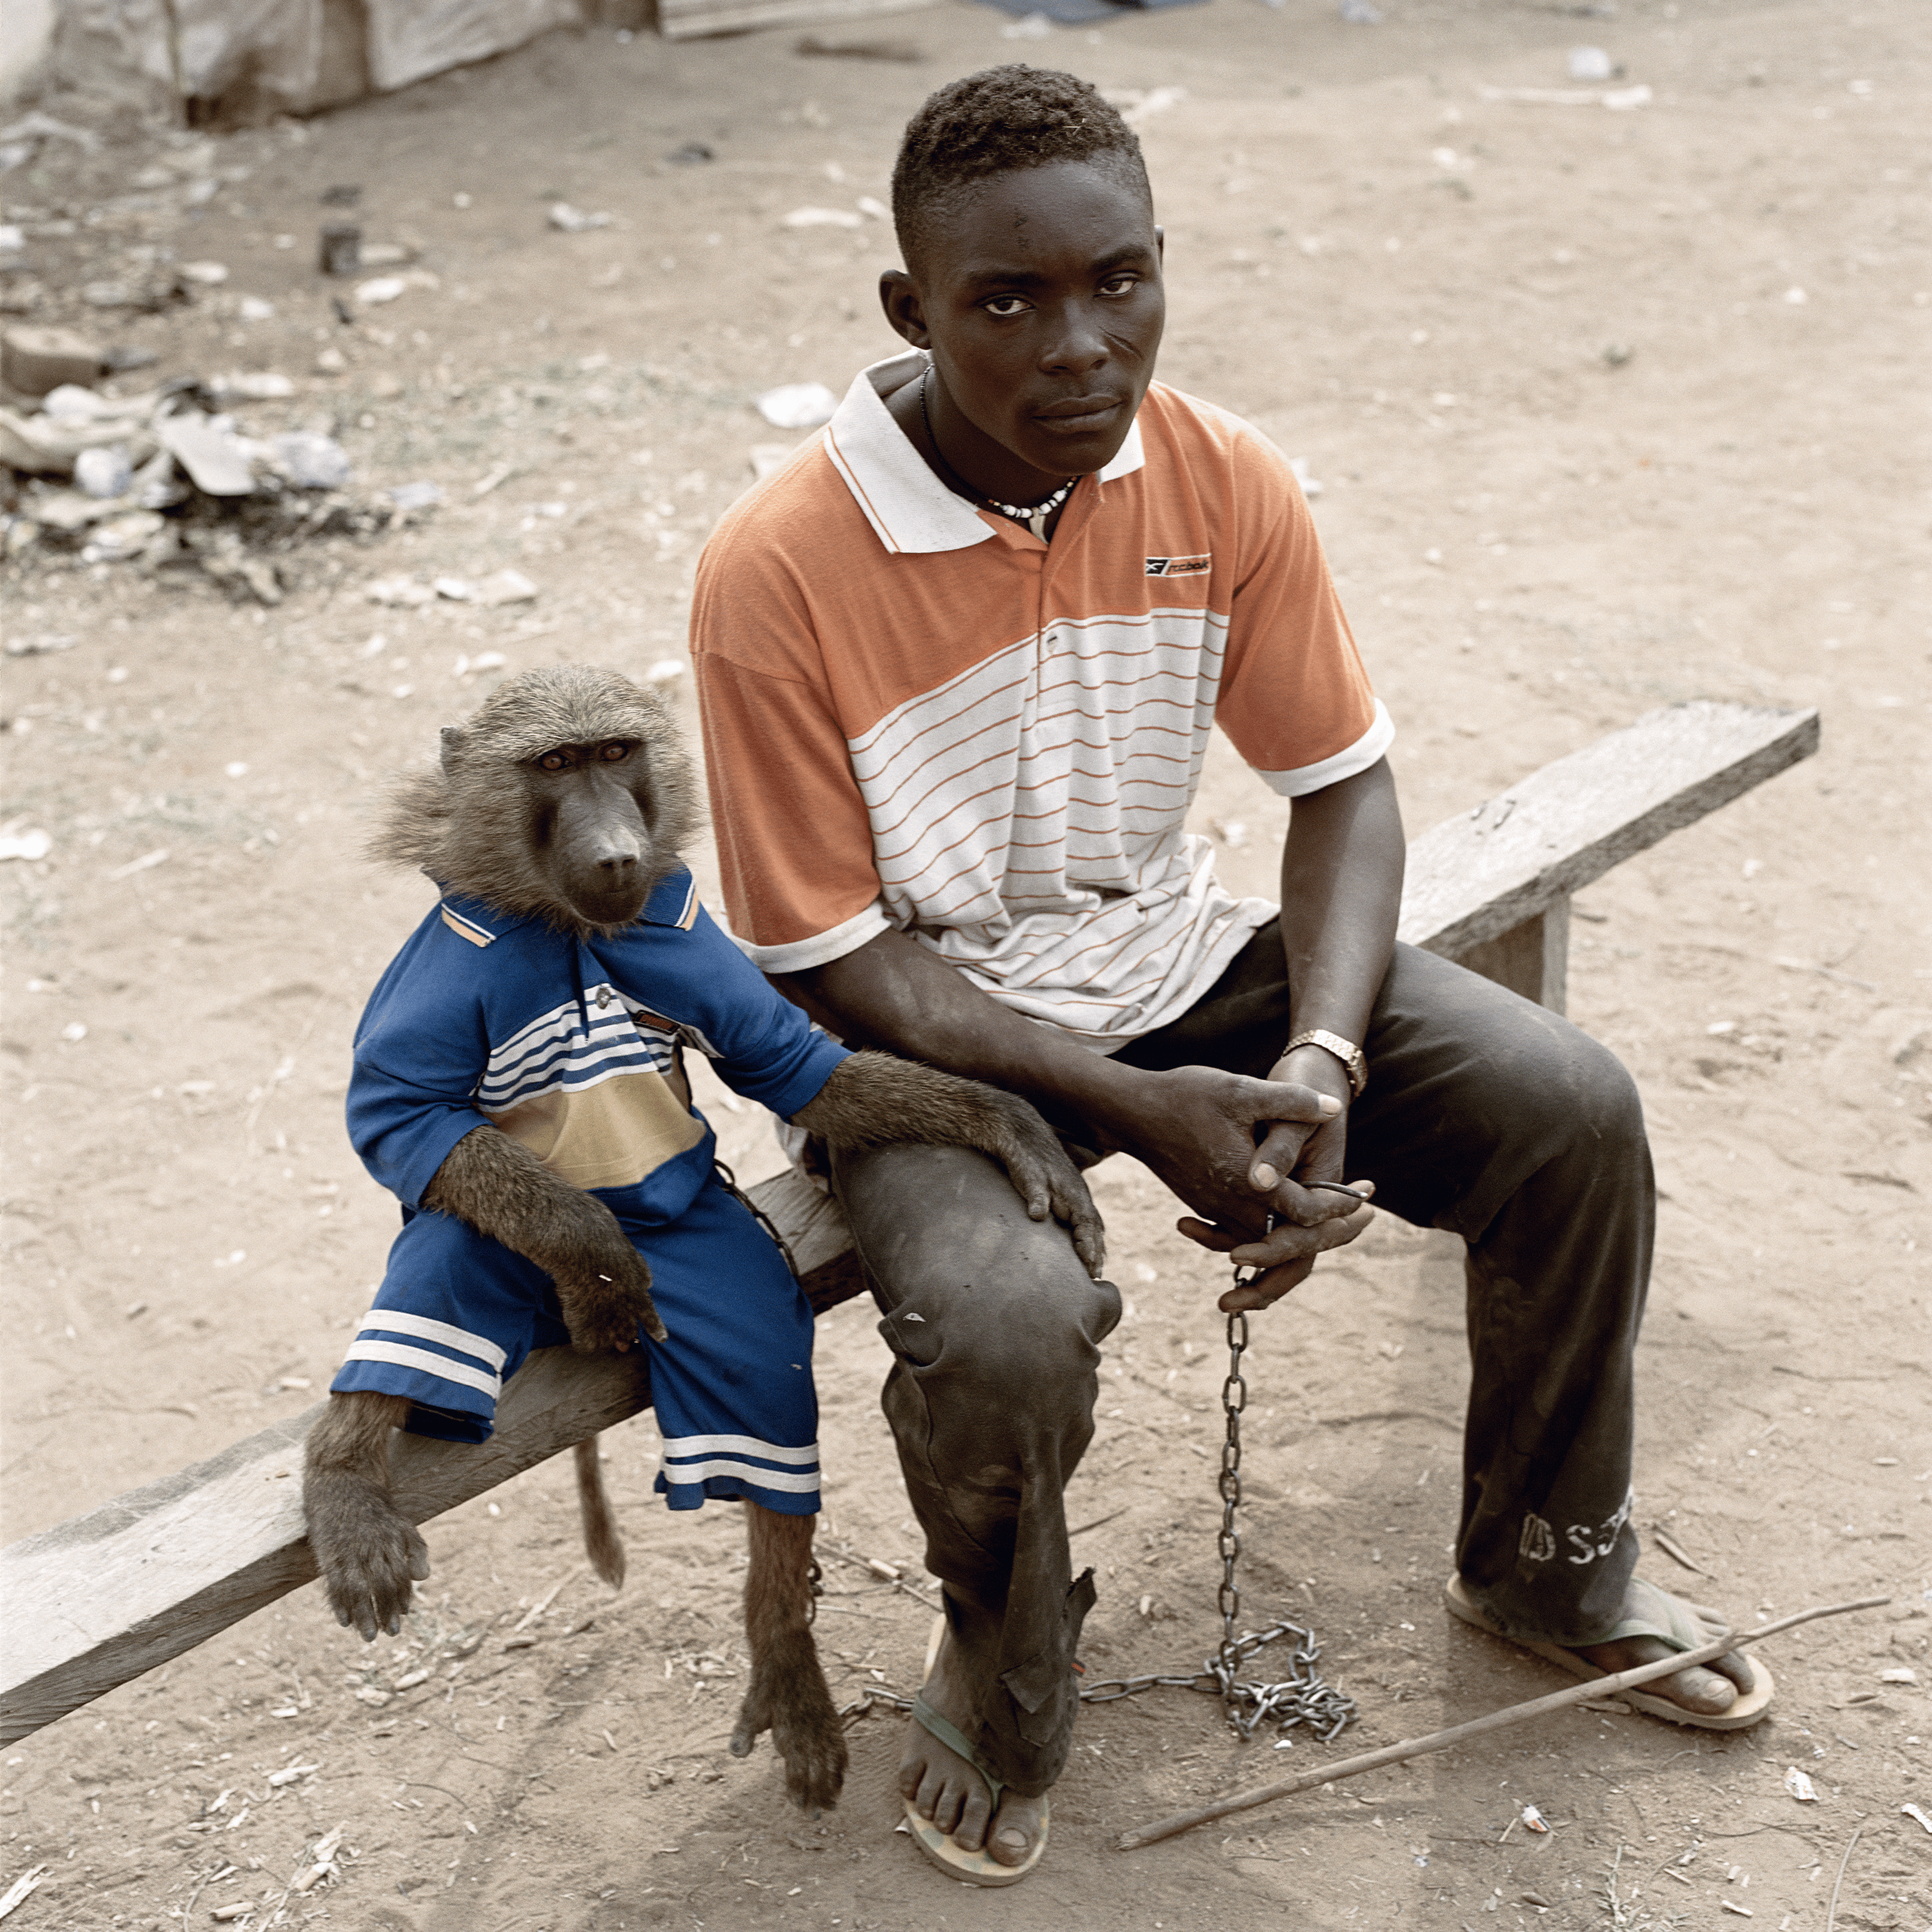 Dayaba Usman with the monkey Clear, Abuja, Nigeria, 2005